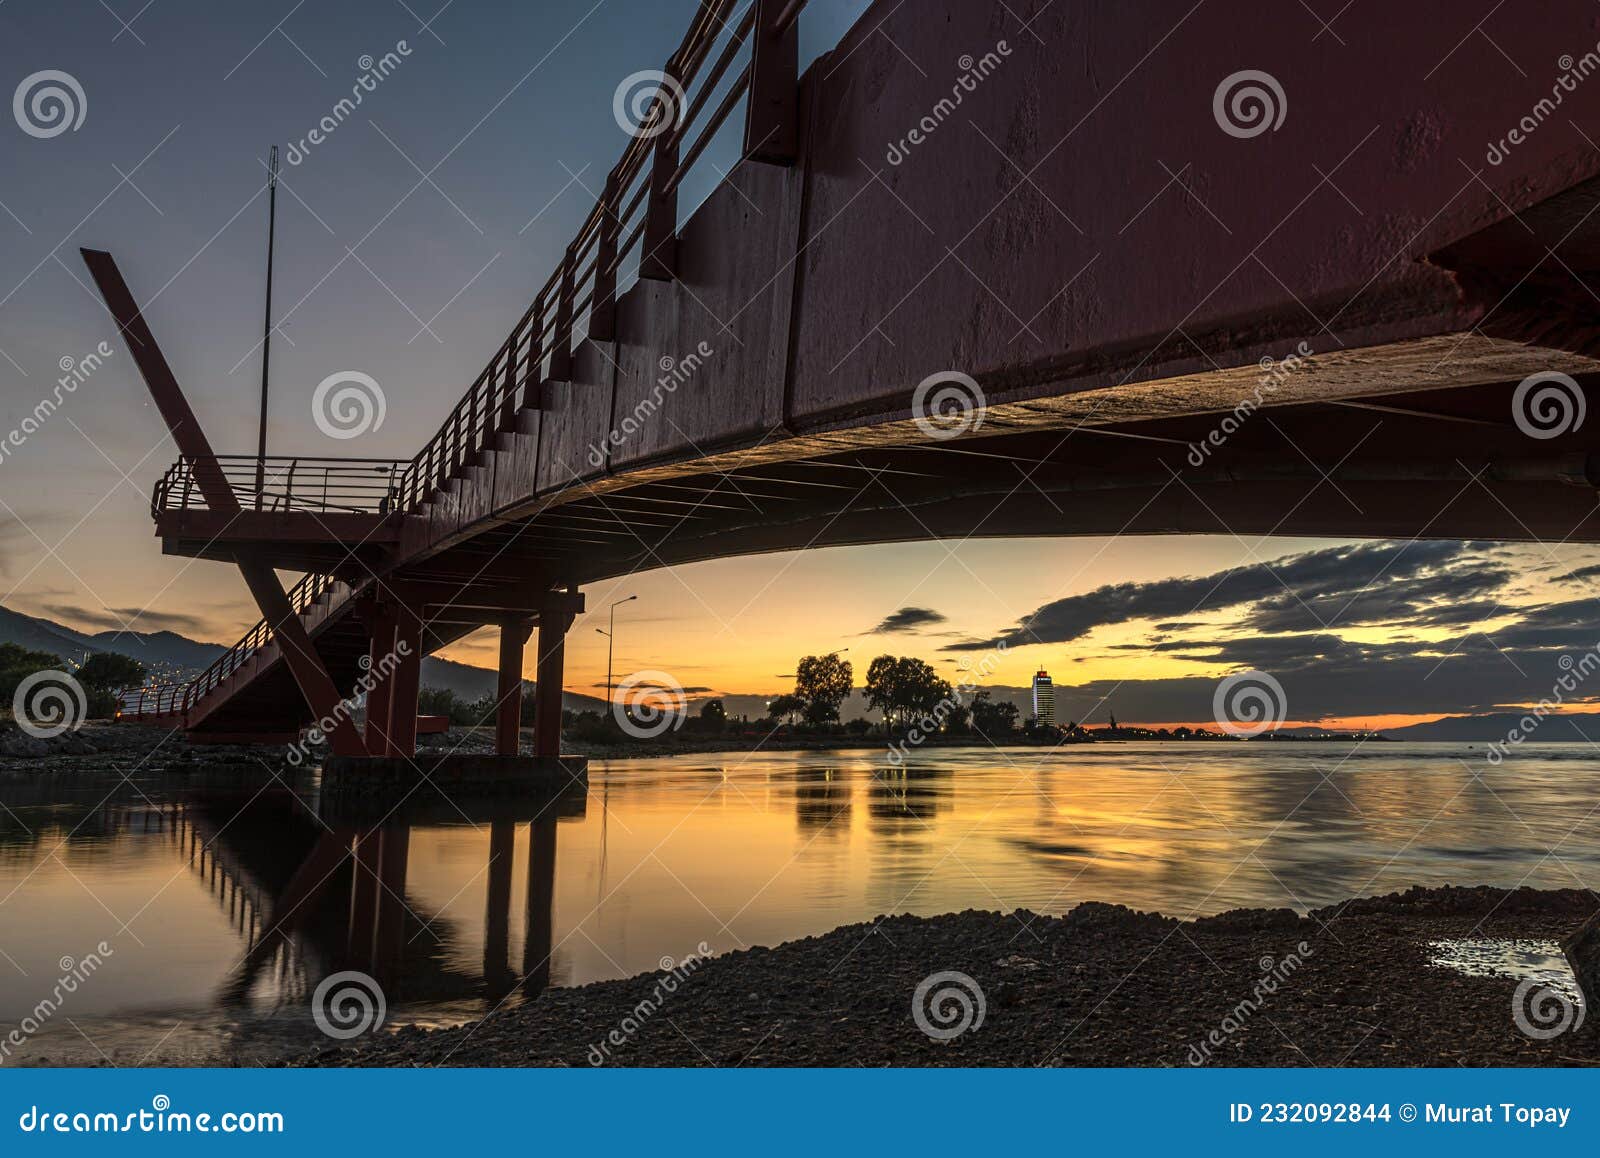 sunset and cycling at baris manco bridge